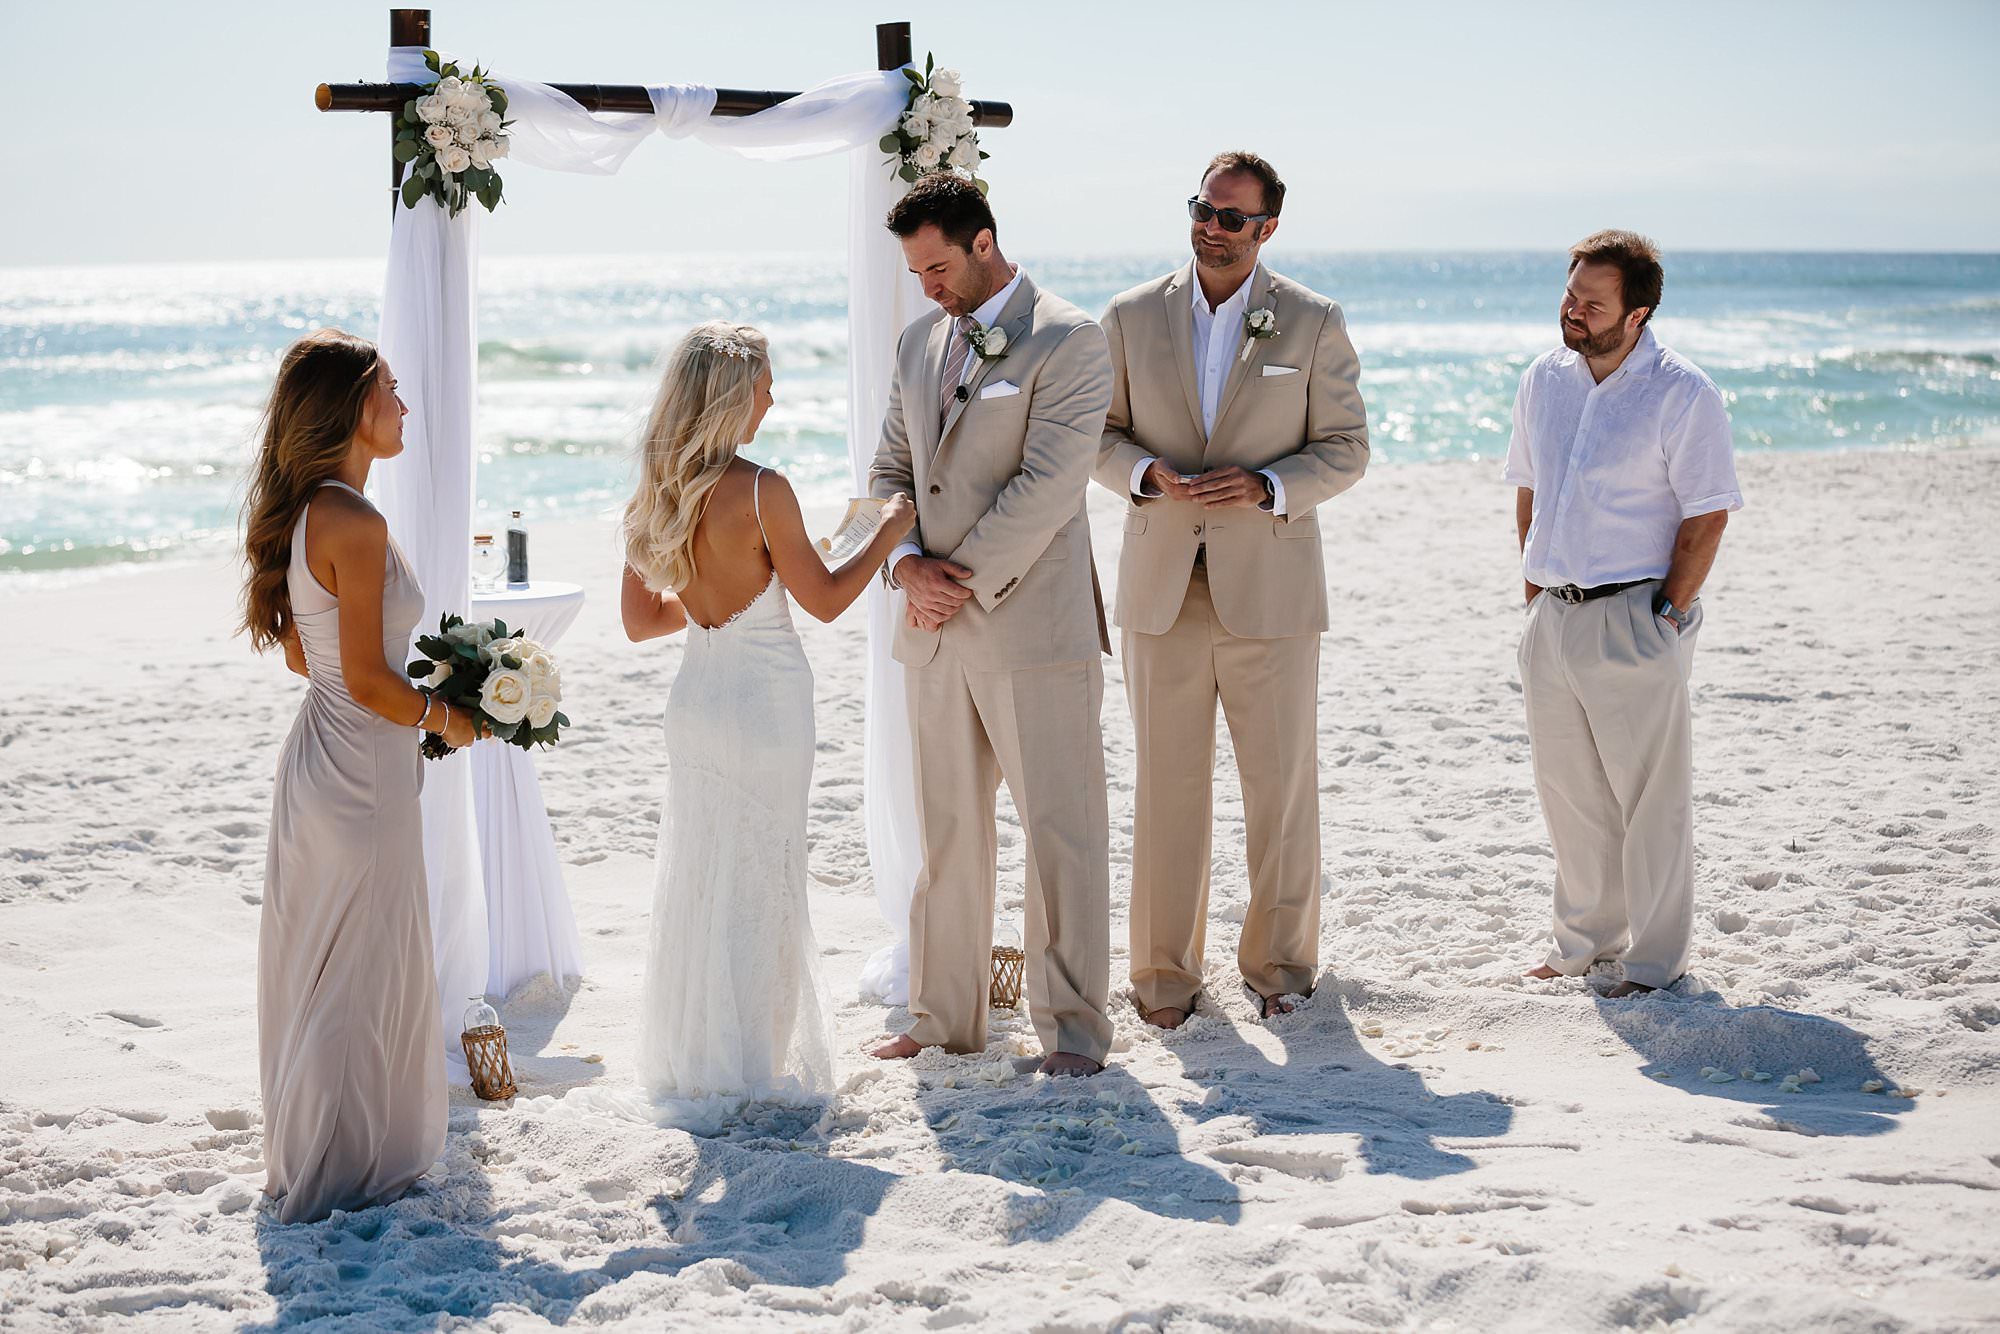 Vow exchange at beach wedding at Henderson Beach State Park